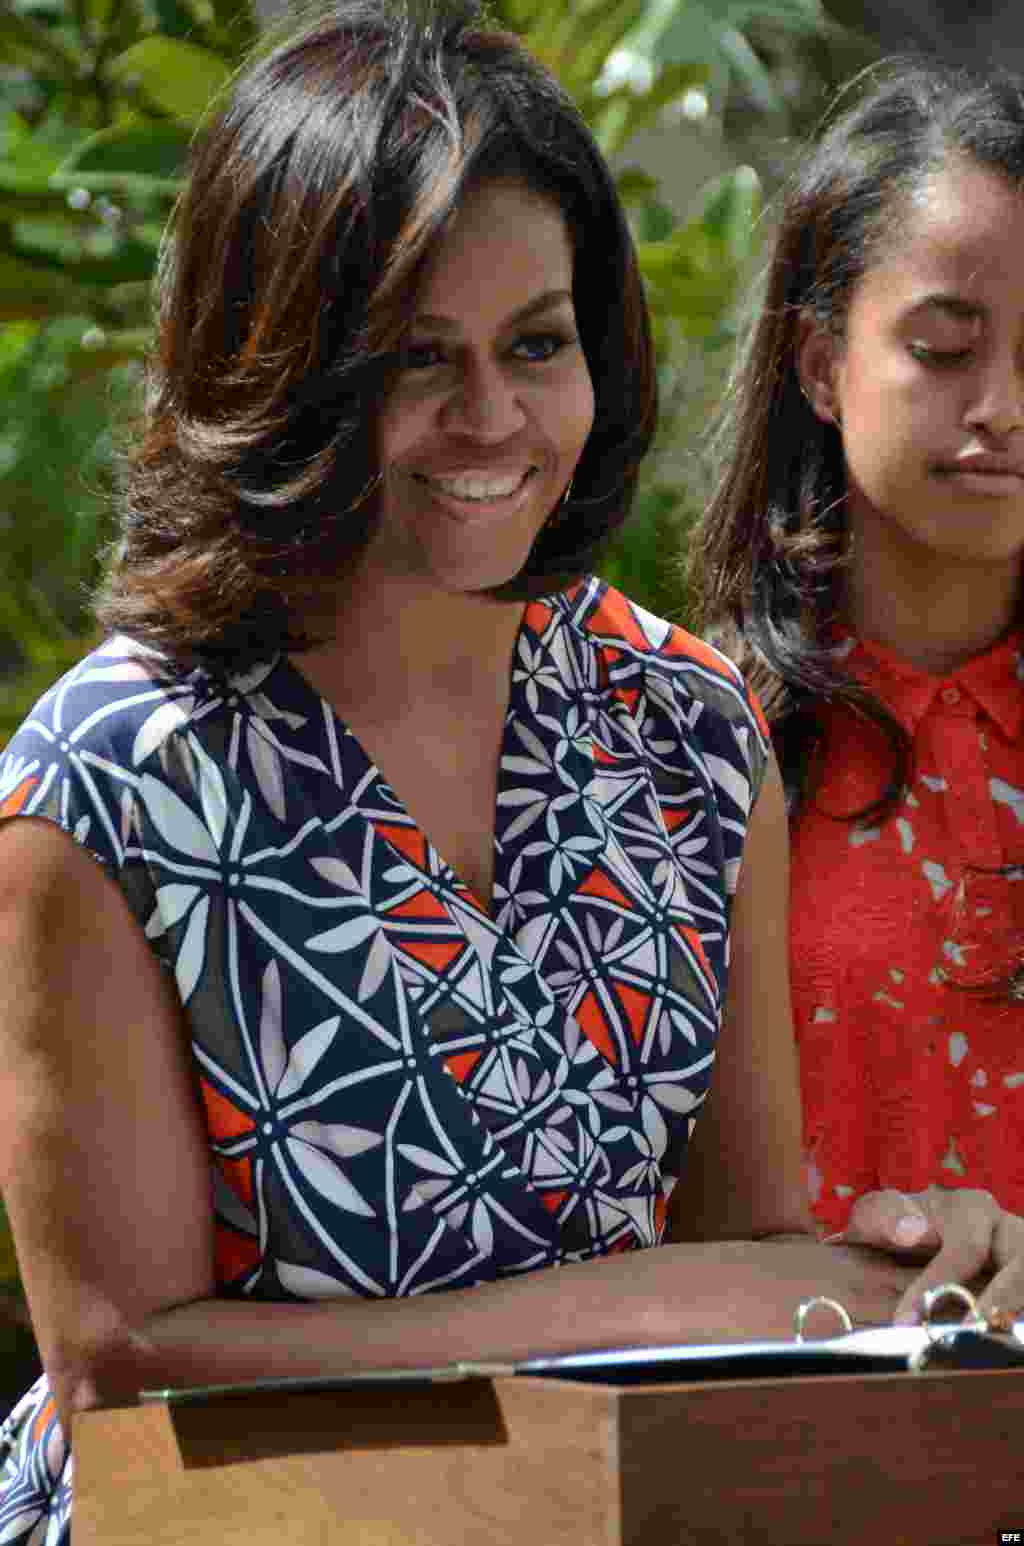 La primera dama estadounidense, Michelle Obama, habla en una ceremonia hoy, martes 22 de marzo de 2016, en la que donó y sembró dos árboles de magnolia, similares a los que florecen en los jardines de la Casa Blanca y un banco de madera para el descanso d